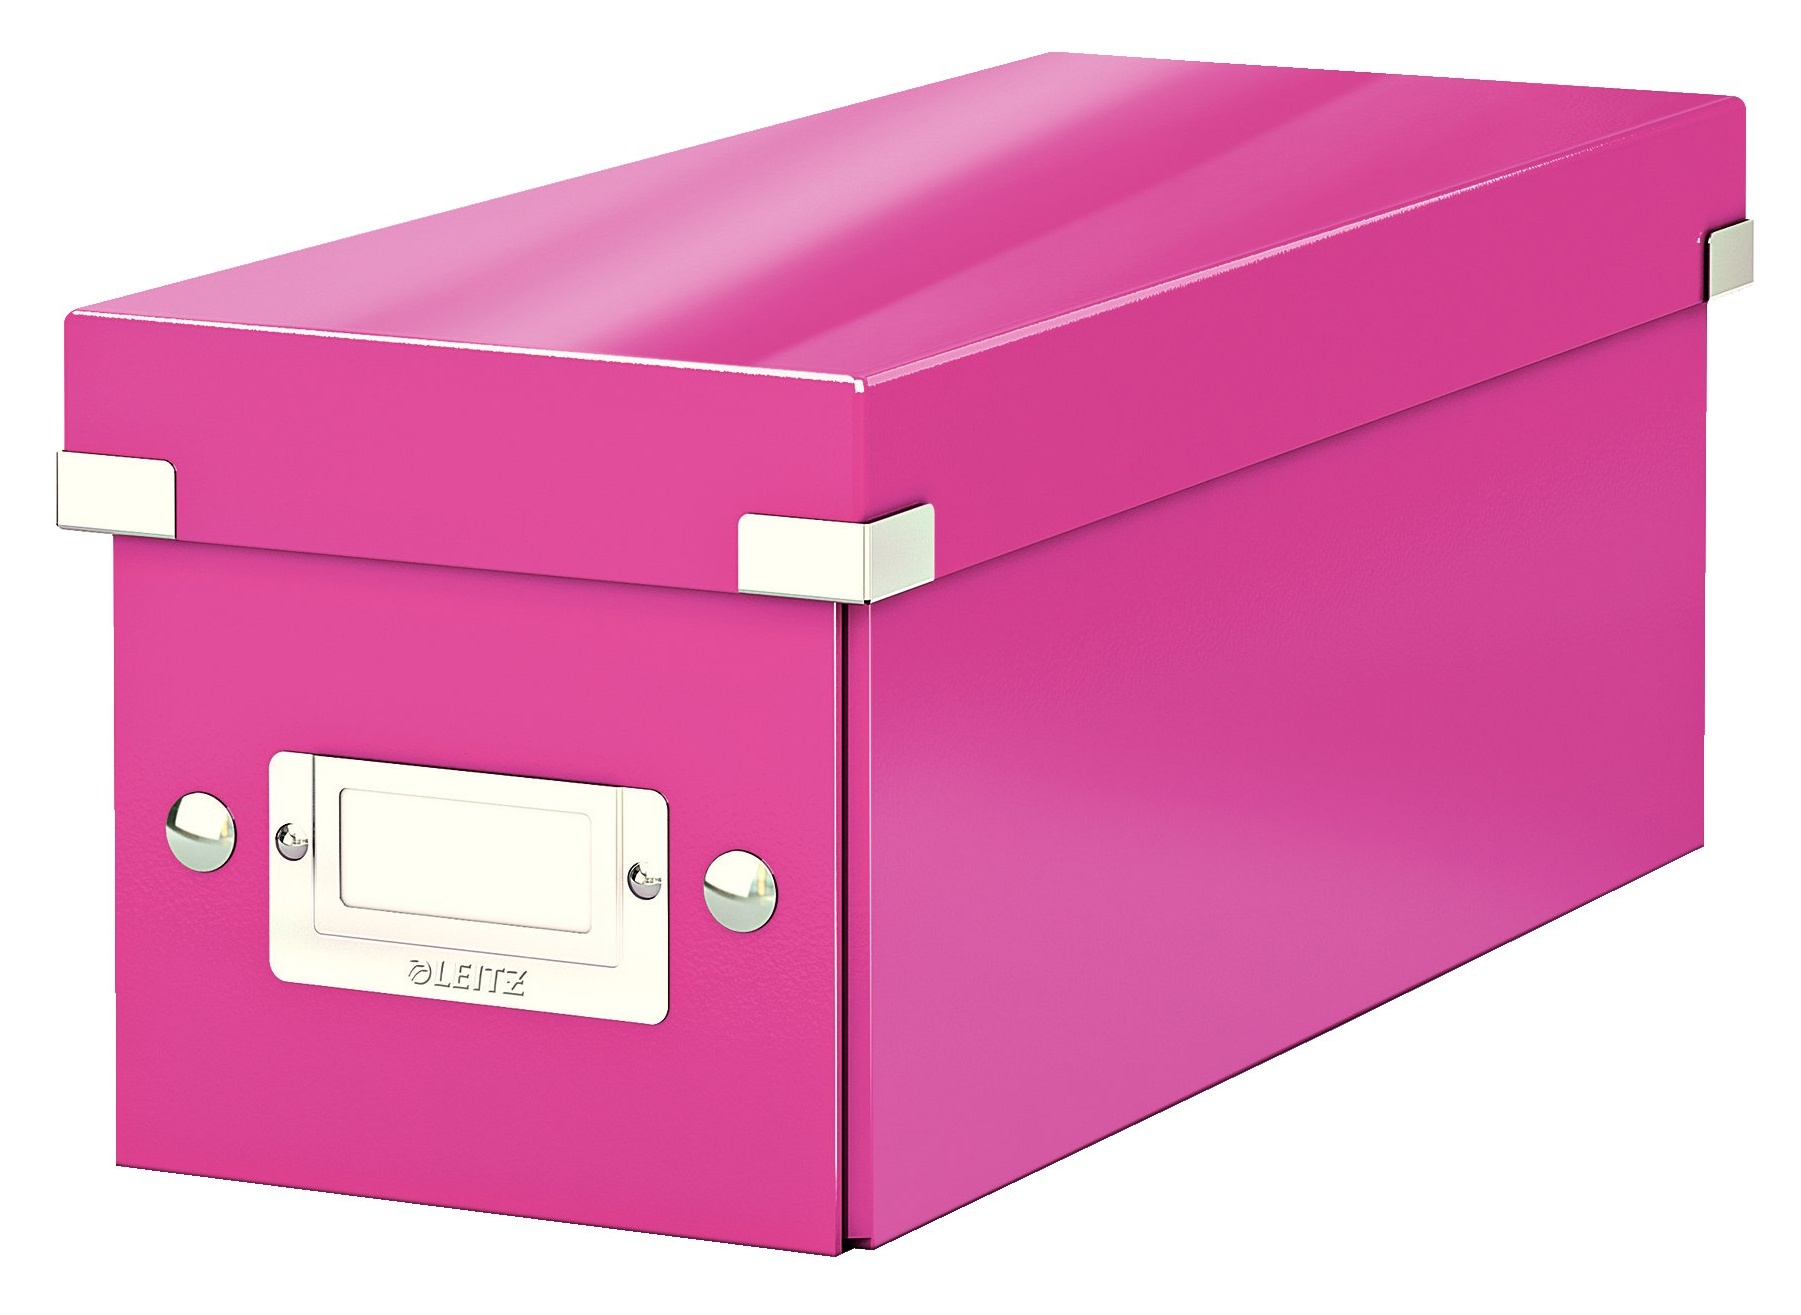 Bild von CD-Ablagebox Click & Store WOW pink